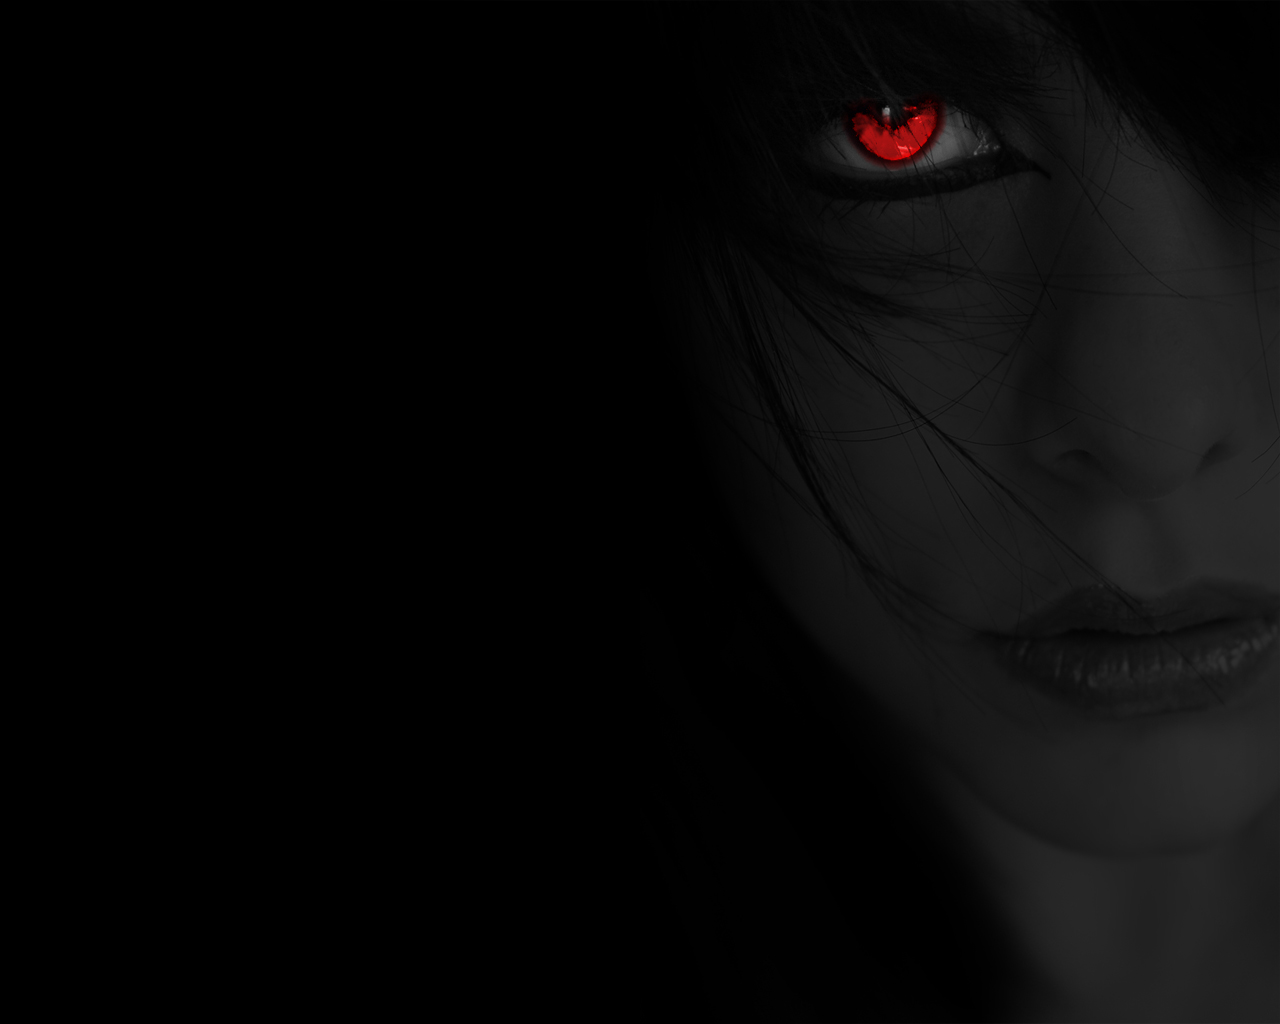 black, red eyes, gothic, women, eye, creepy 1080p